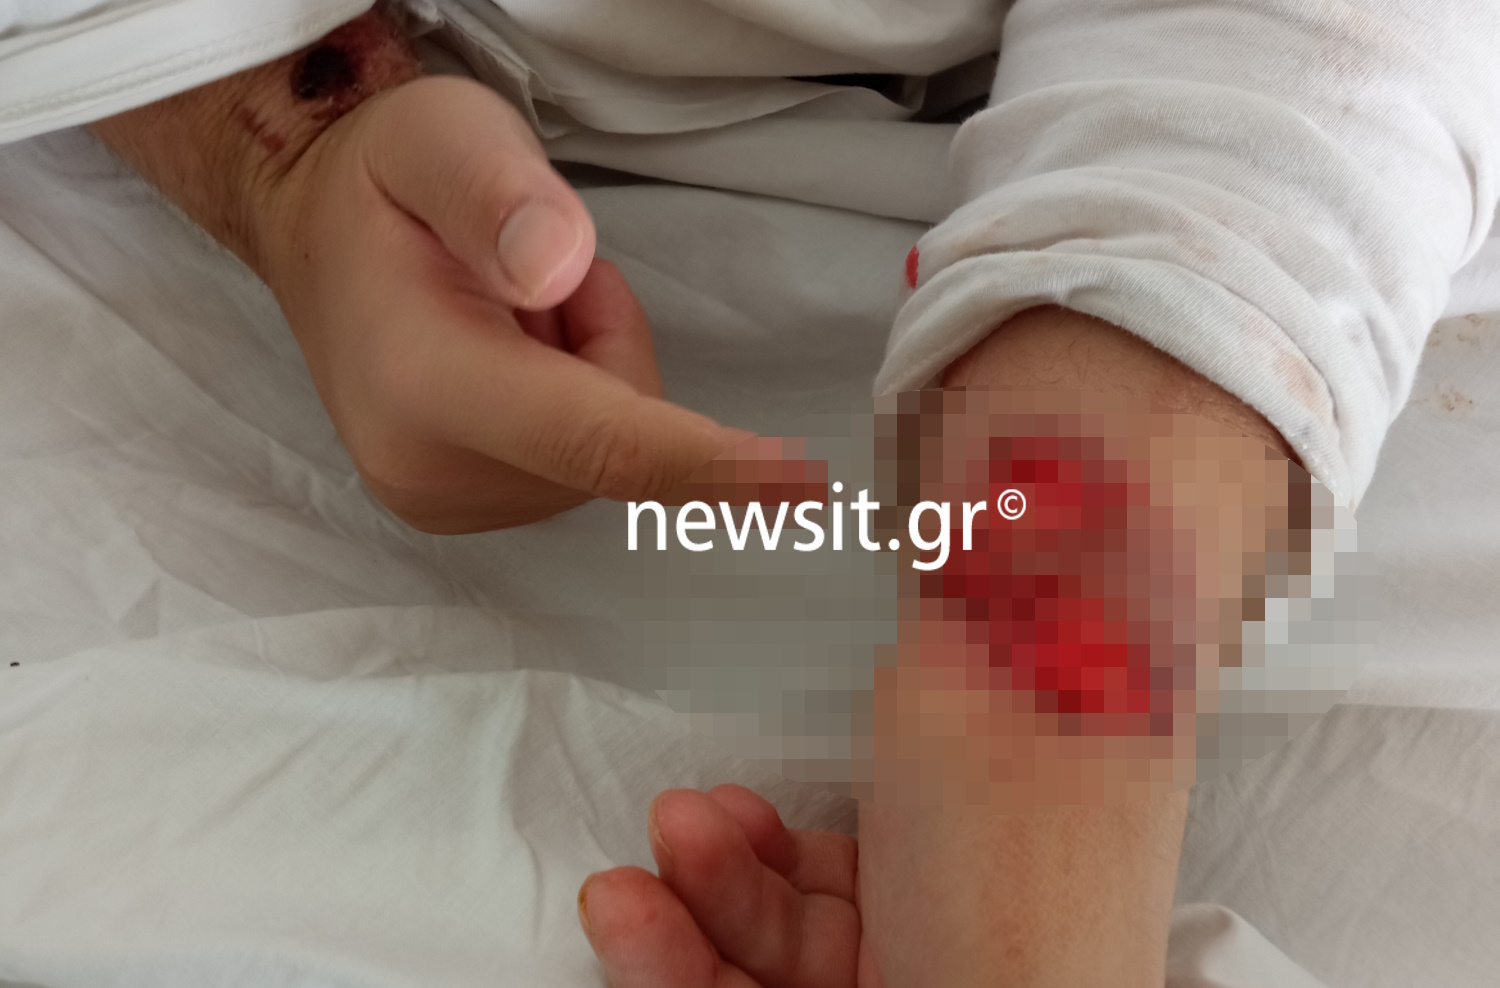 Πατέρας καταγγέλλει ιδιωτικό θεραπευτήριο στο newsit.gr για τον βασανισμό του παιδιού του που είναι ΑμεΑ